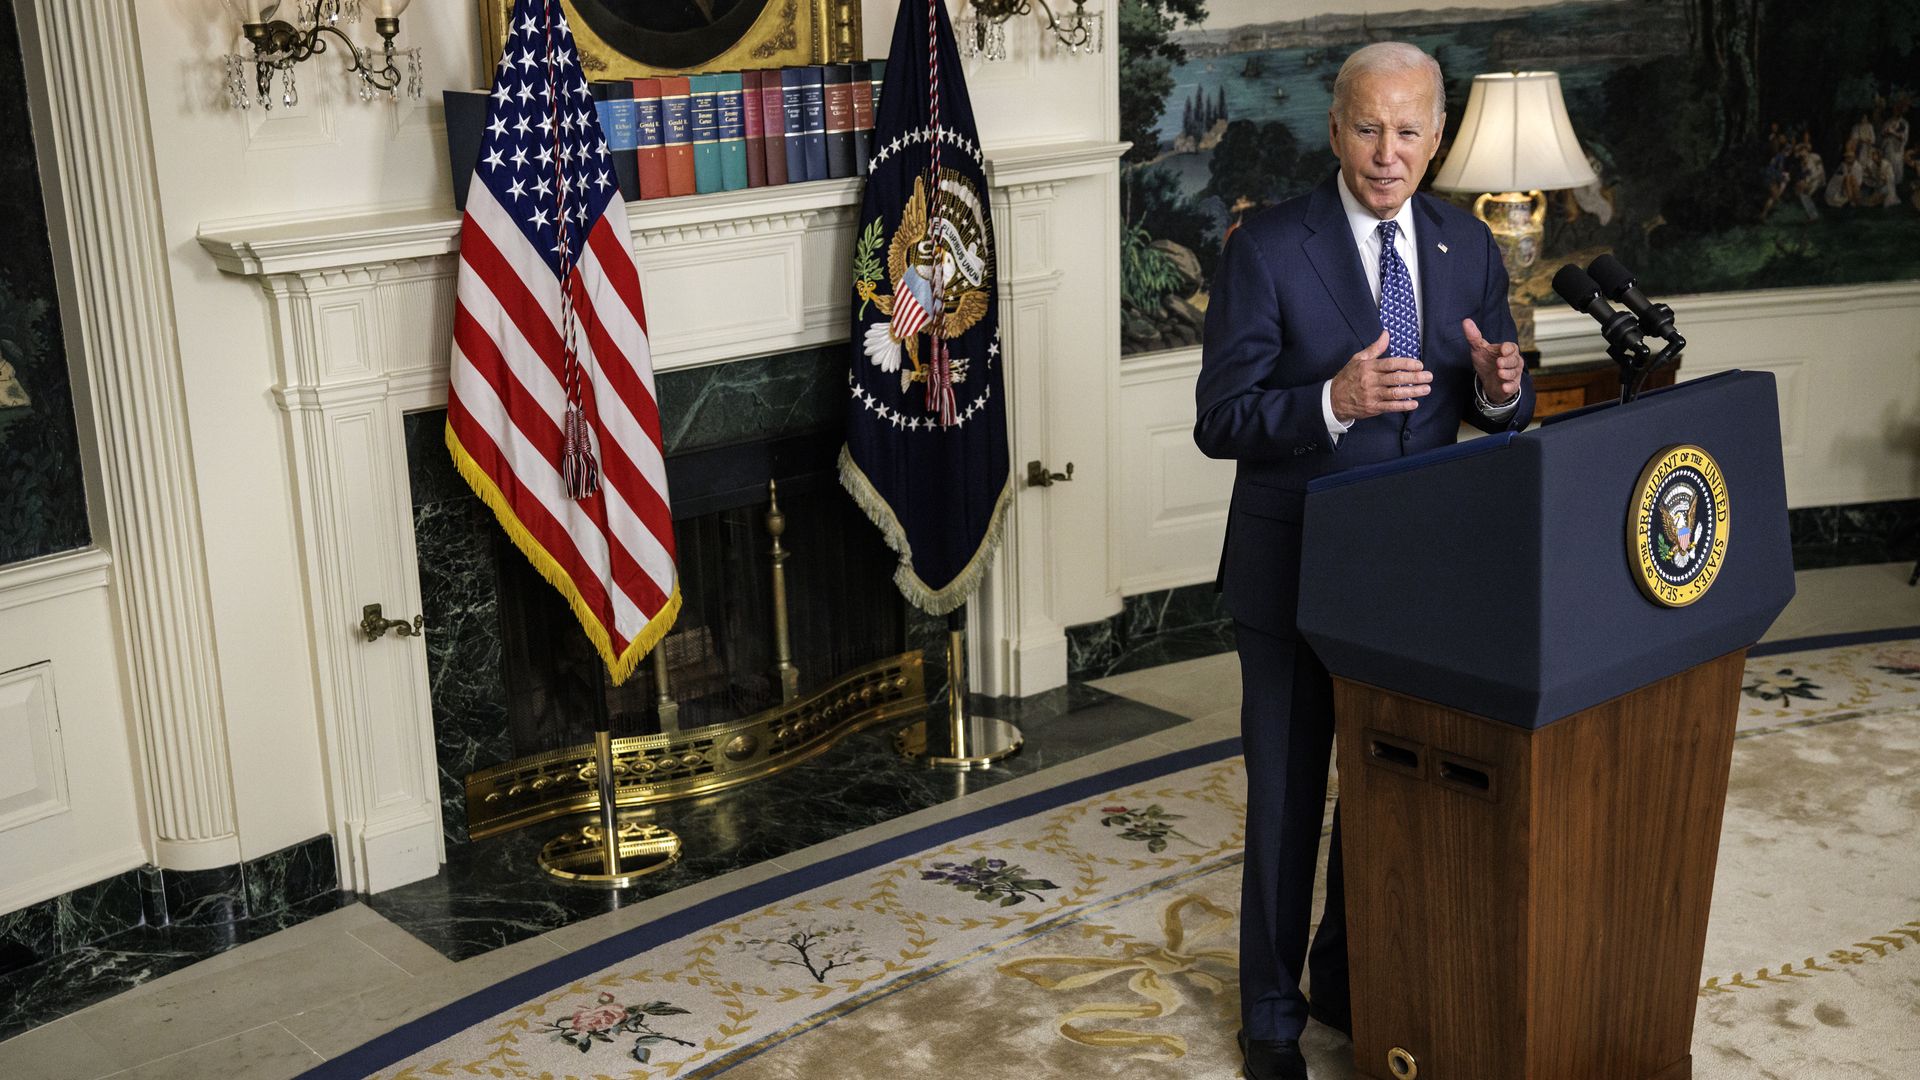 President Biden speaking in the White House on Feb. 8.